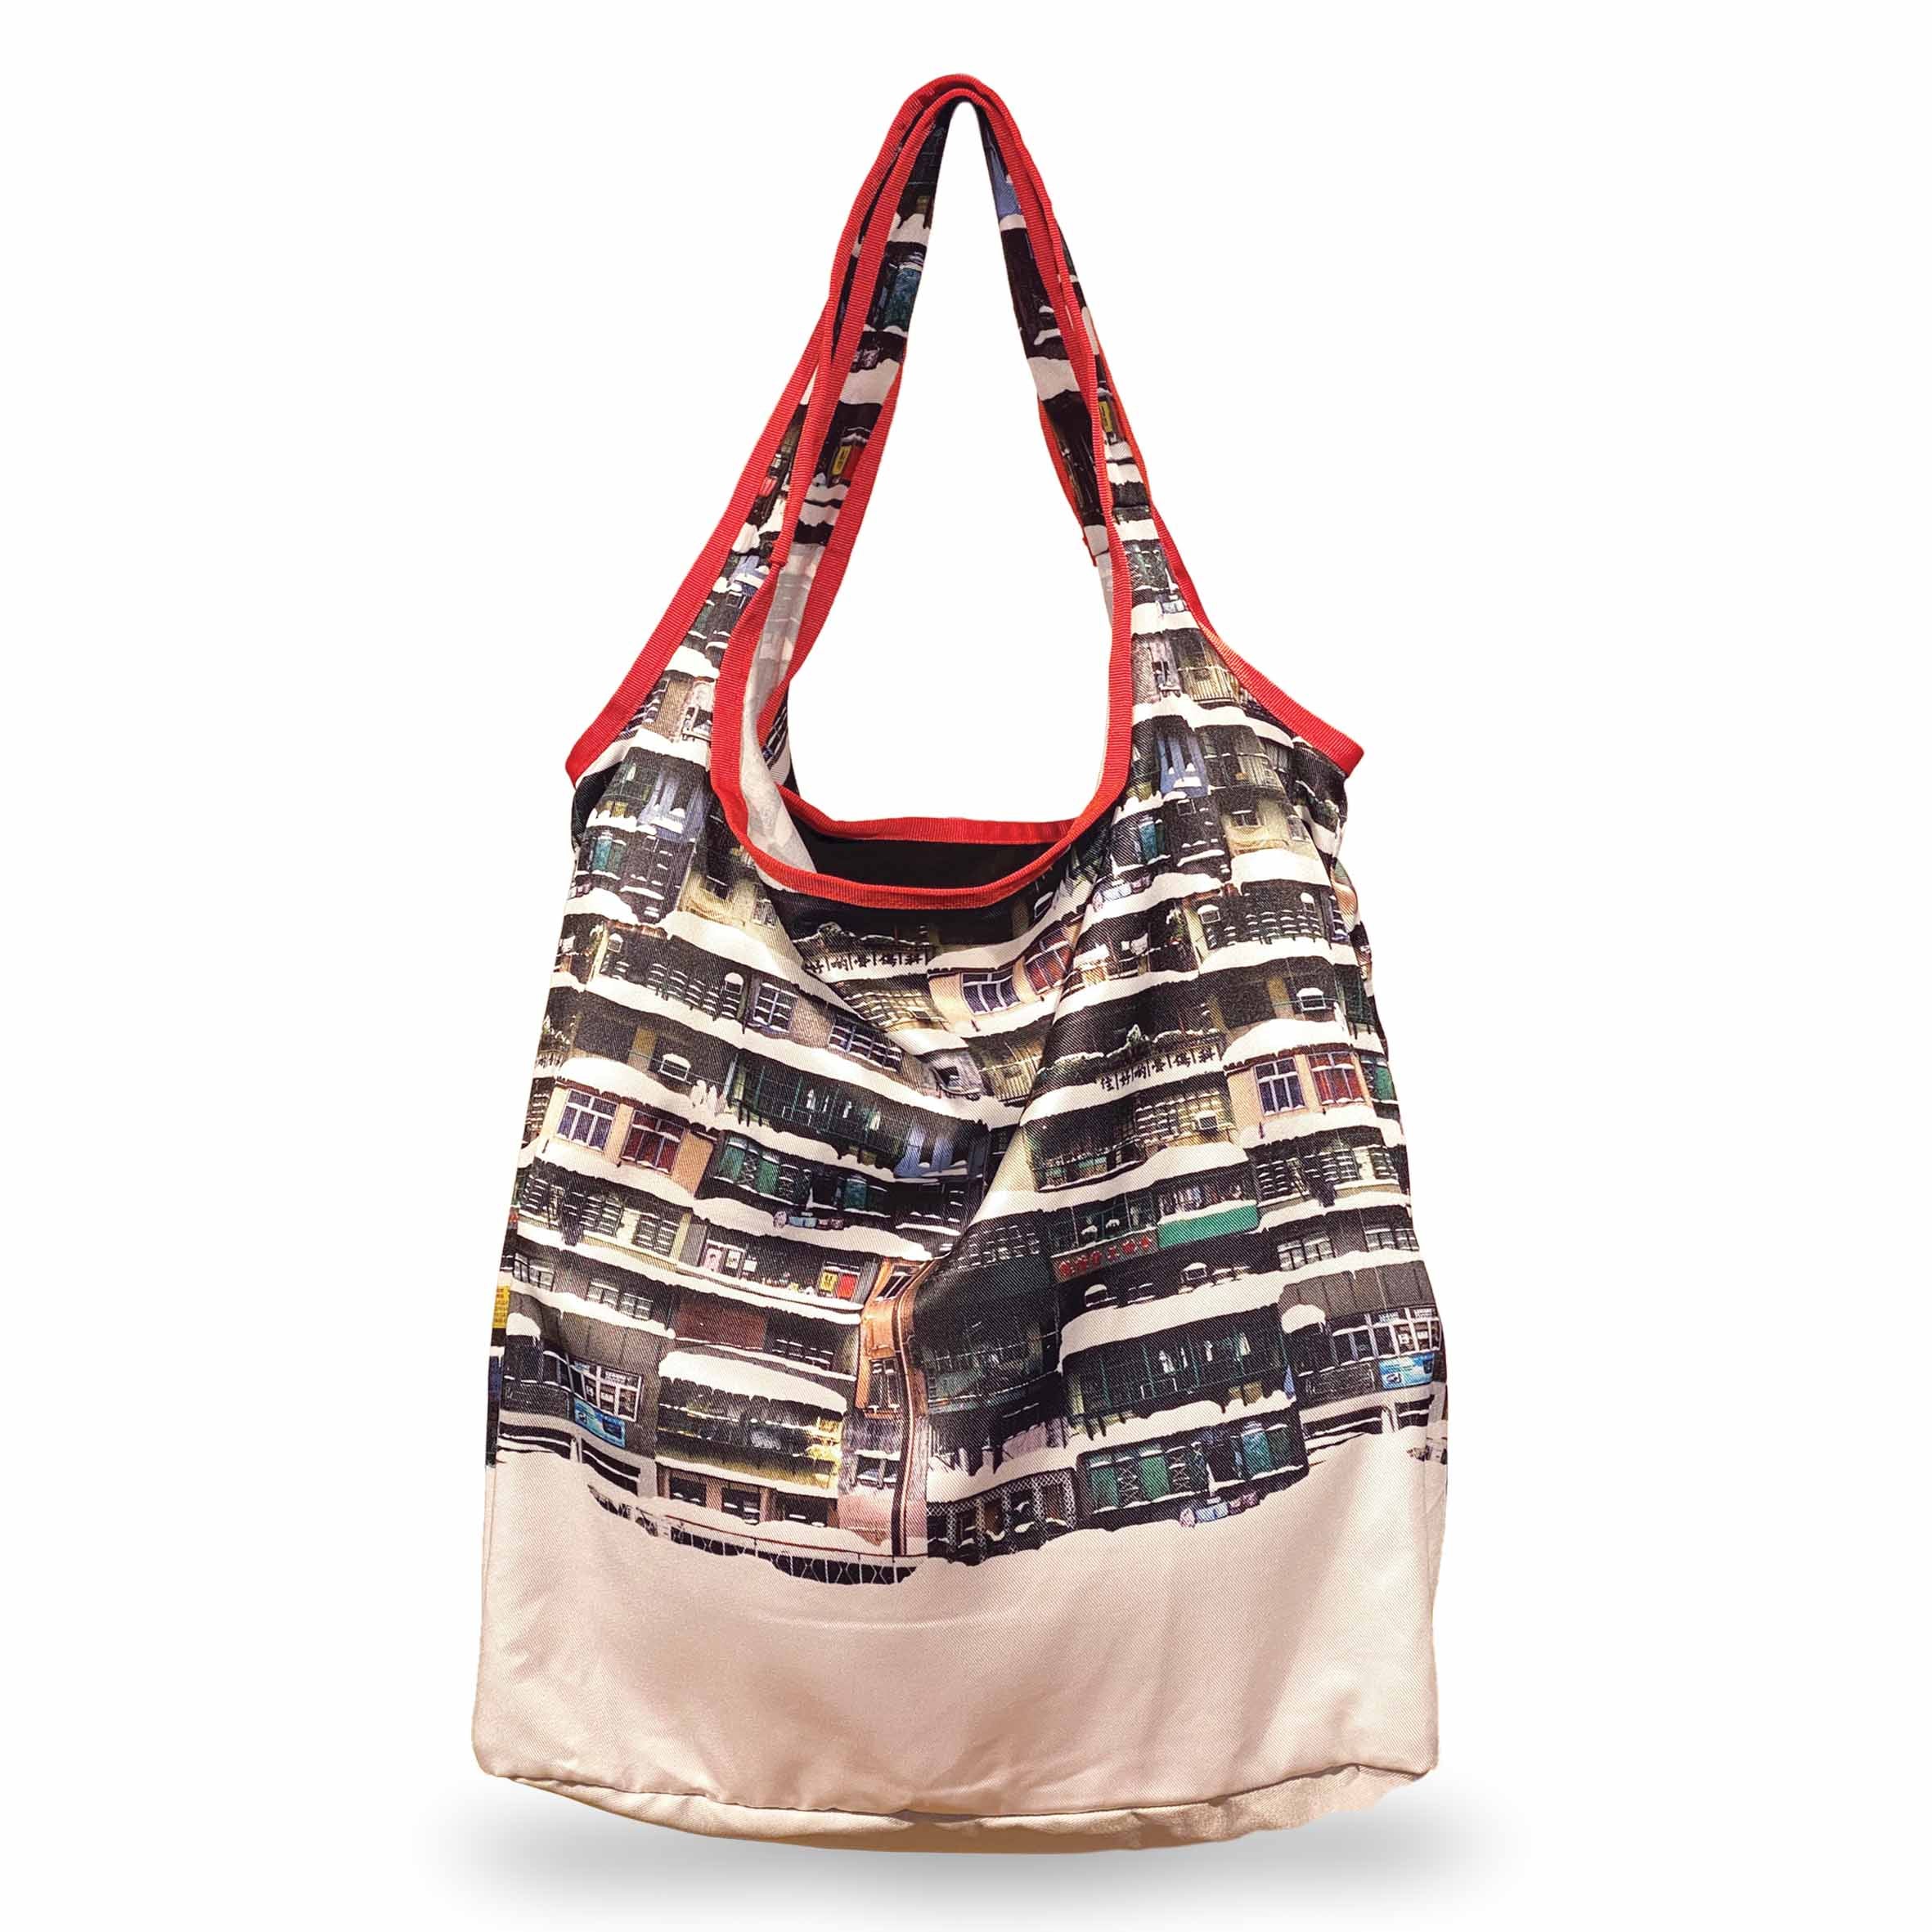 Yaumati Winter Foldable Shopping Bag